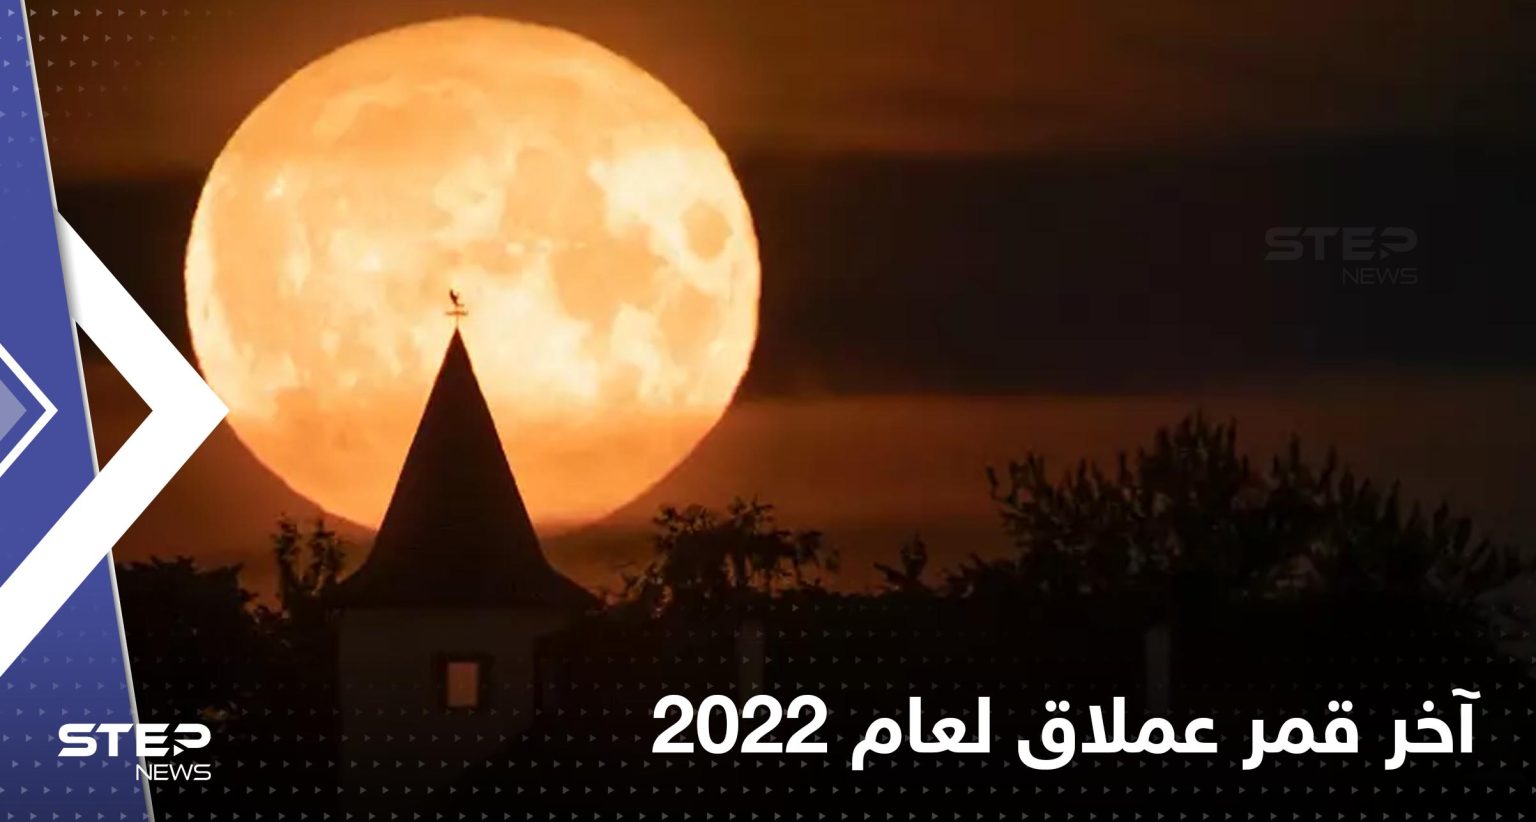 الأرض على موعد مع آخر قمر عملاق لعام 2022.. “بدر الحبوب”